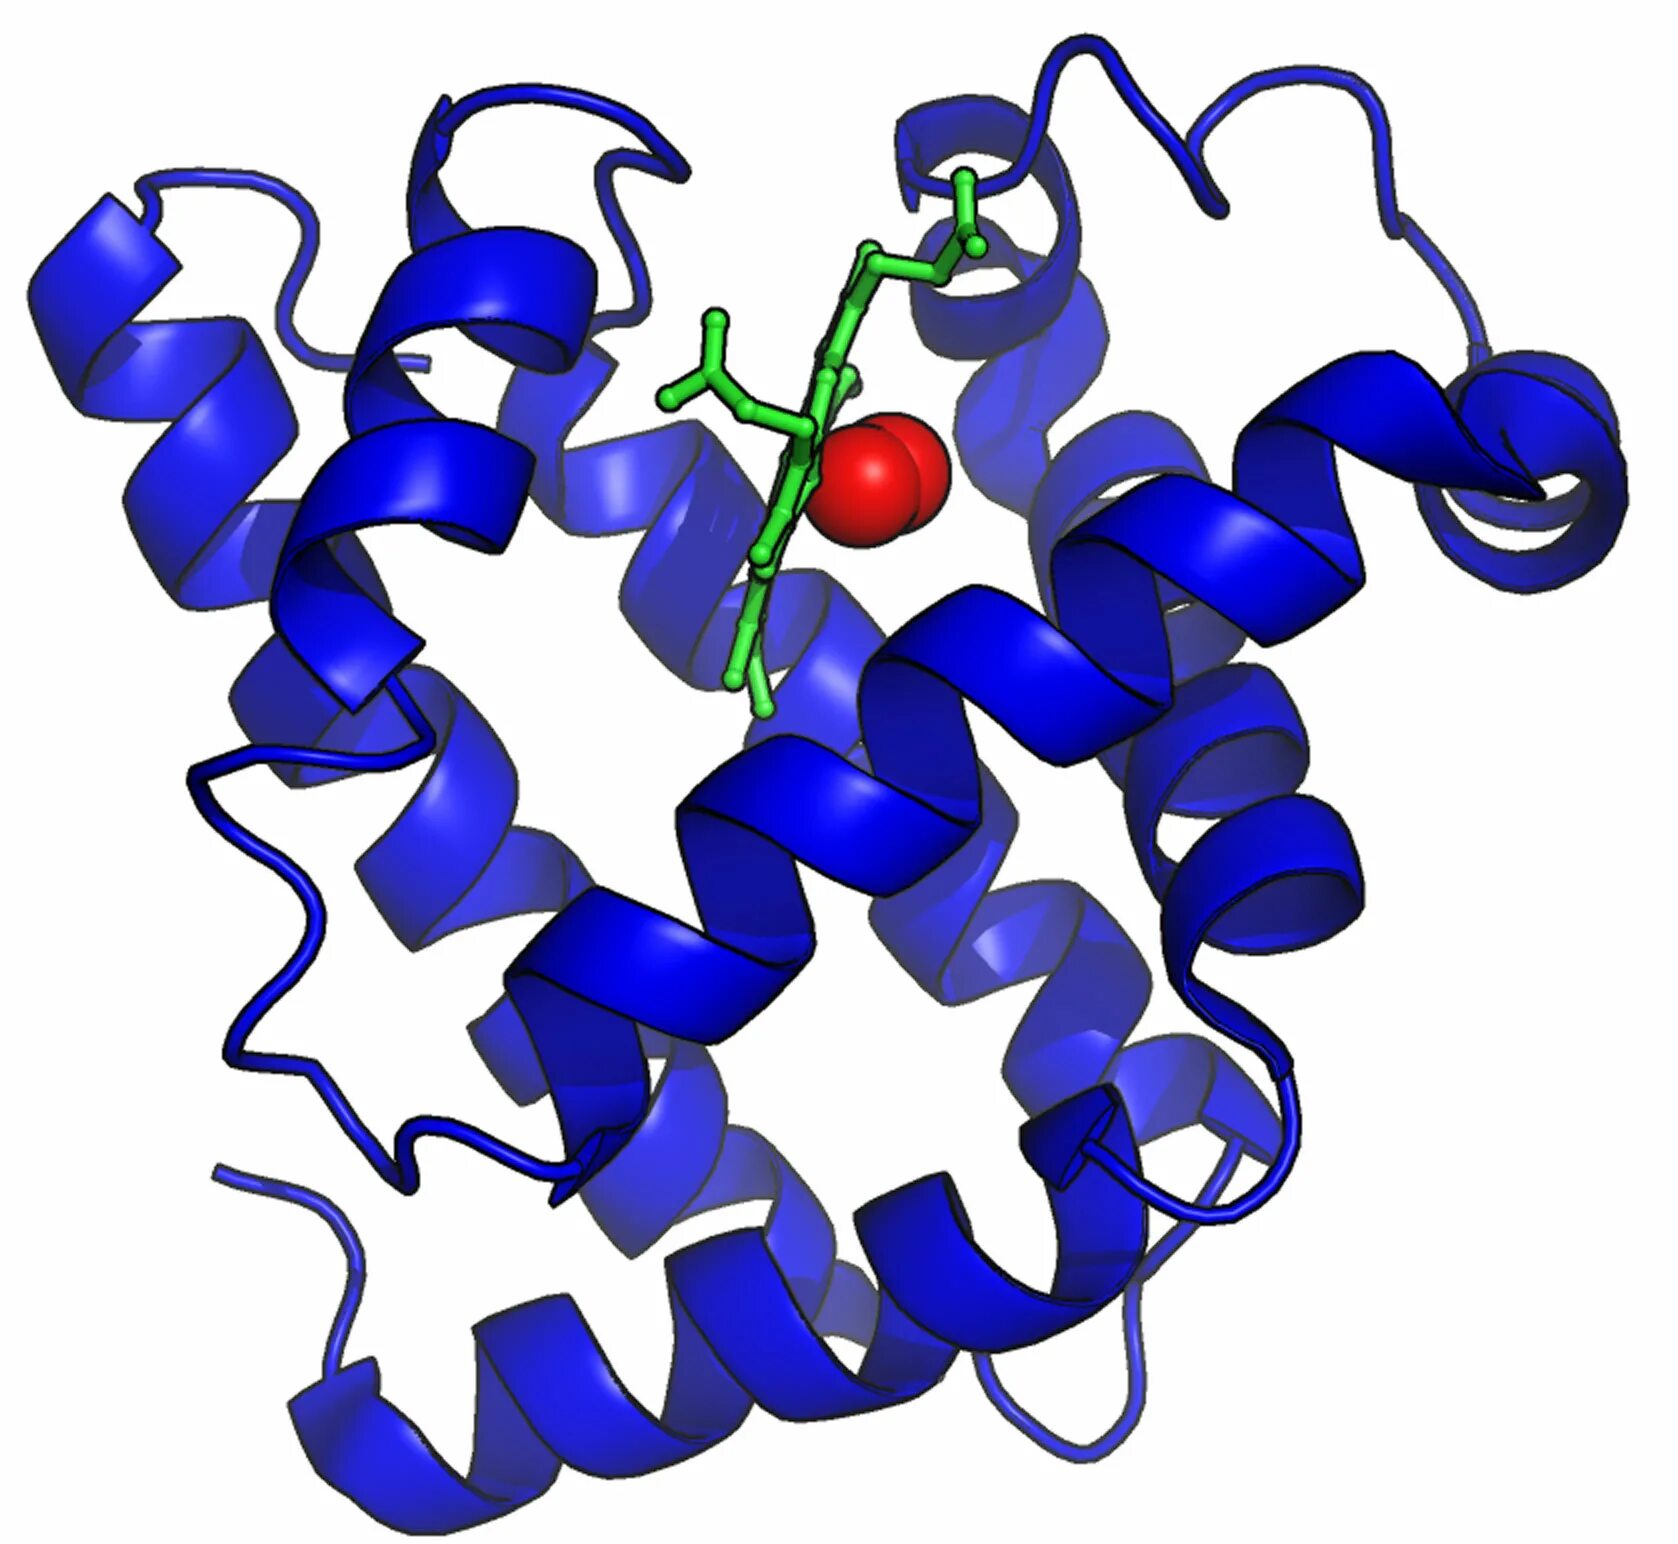 Миоглобин. Строение молекулы белка миоглобина. Молекула миоглобина. Миоглобин структура белка.